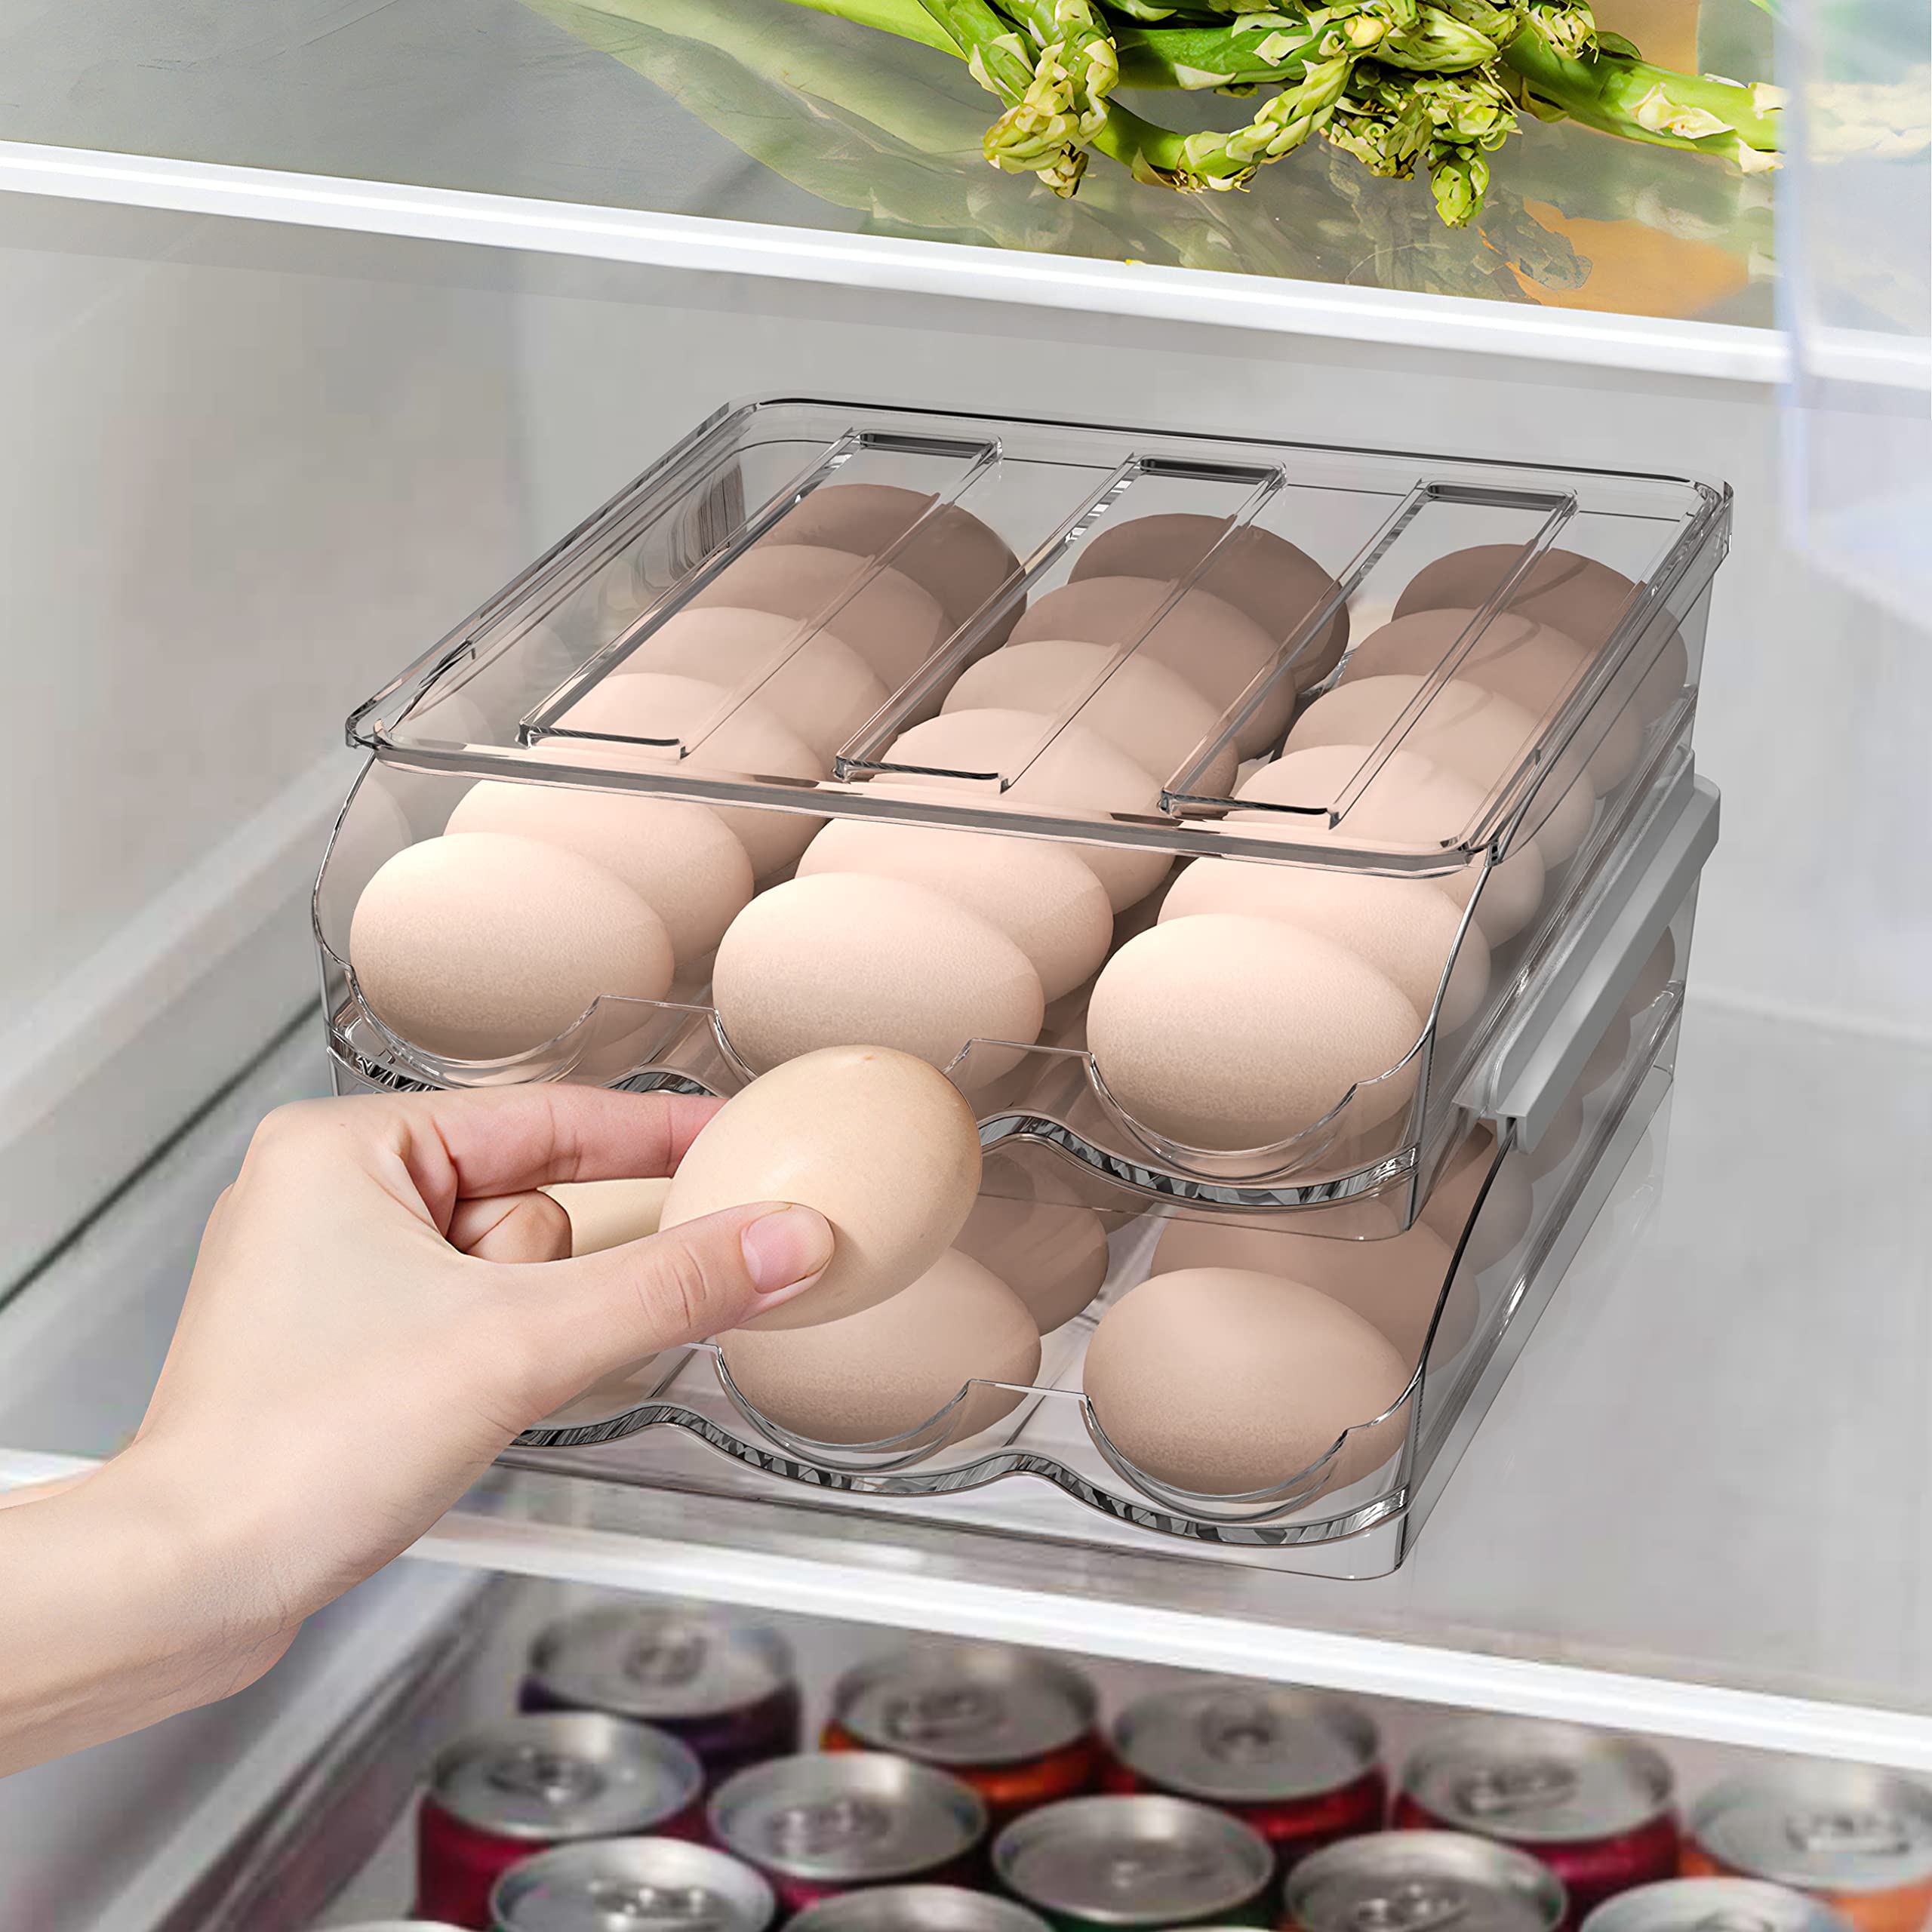 bonusuper Egg Container for Refrigerator, 36 Egg Holder for Refrigerator, Egg Storage Container Organizer Egg Tray Household Egg Fresh Storage Box for Fridge (2 Layer)